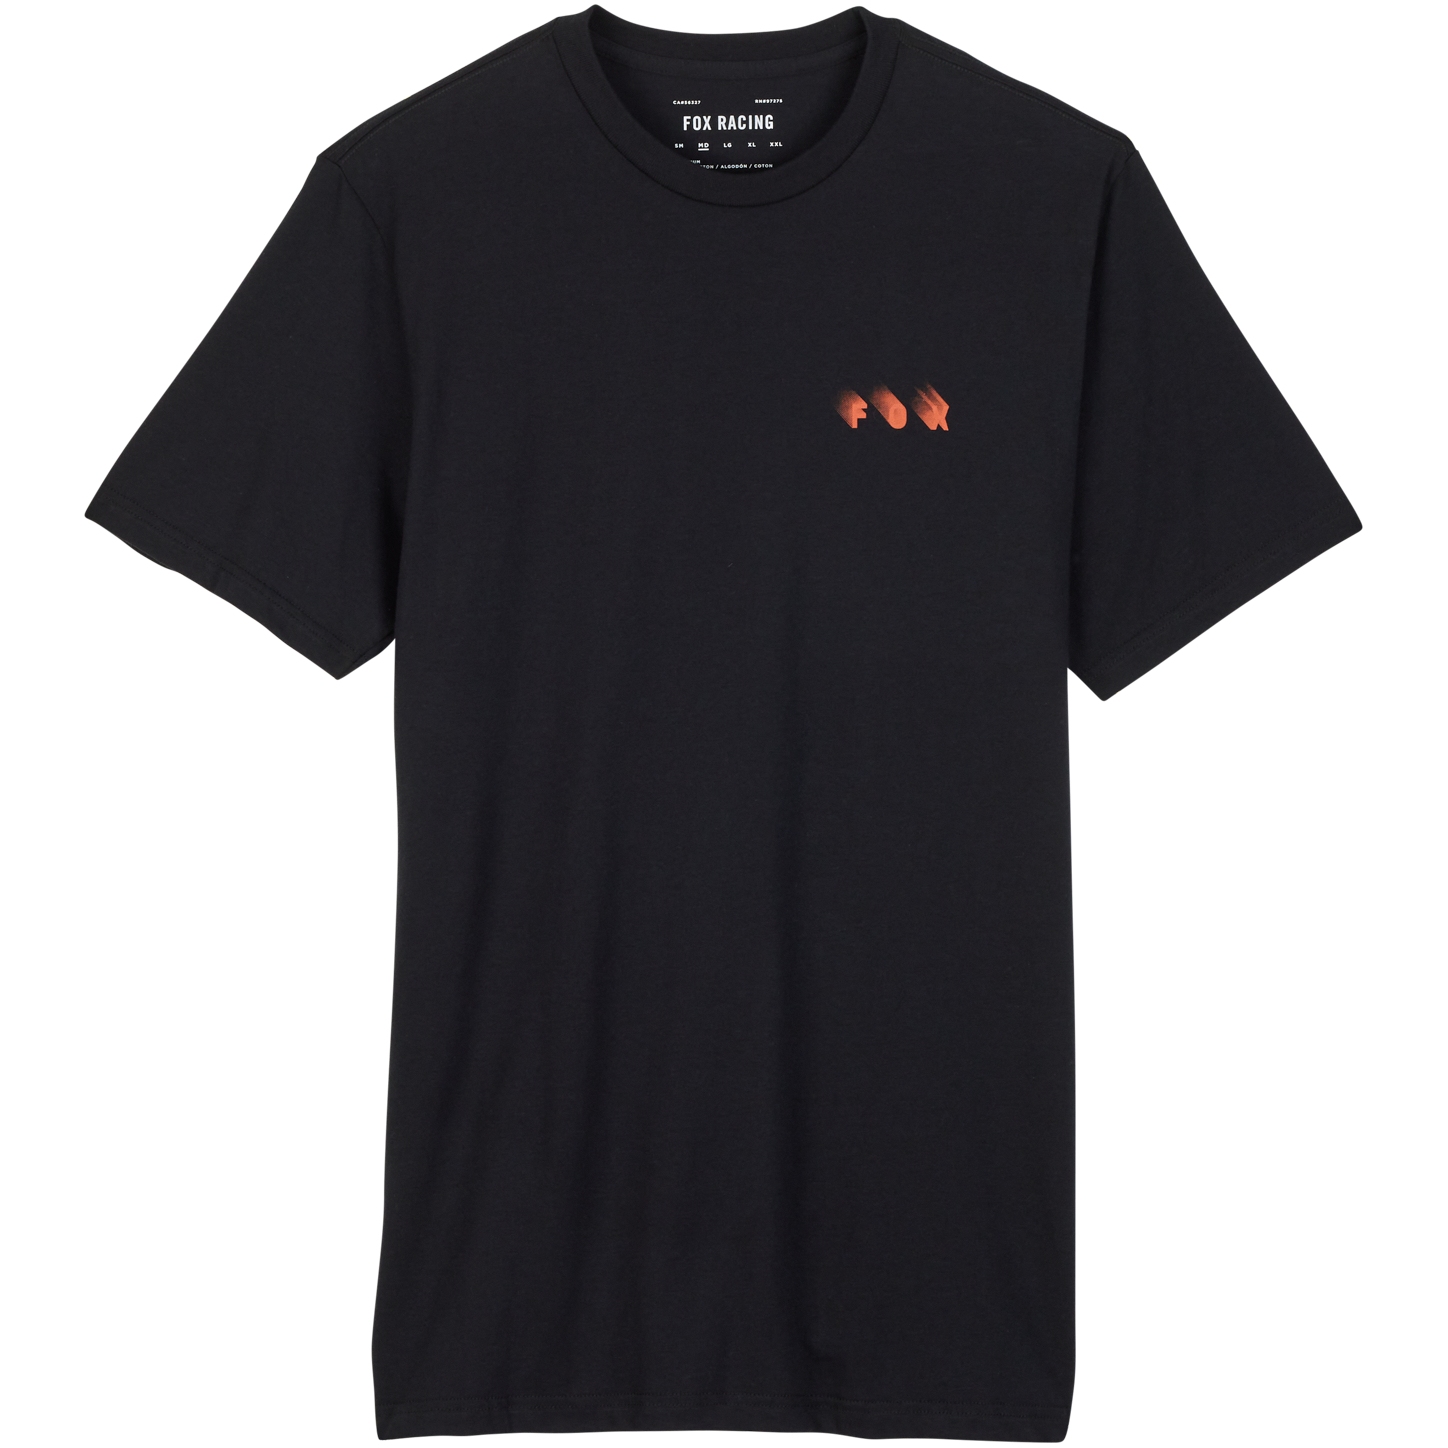 Productfoto van FOX Wayfaring Premium Shirt Heren - zwart